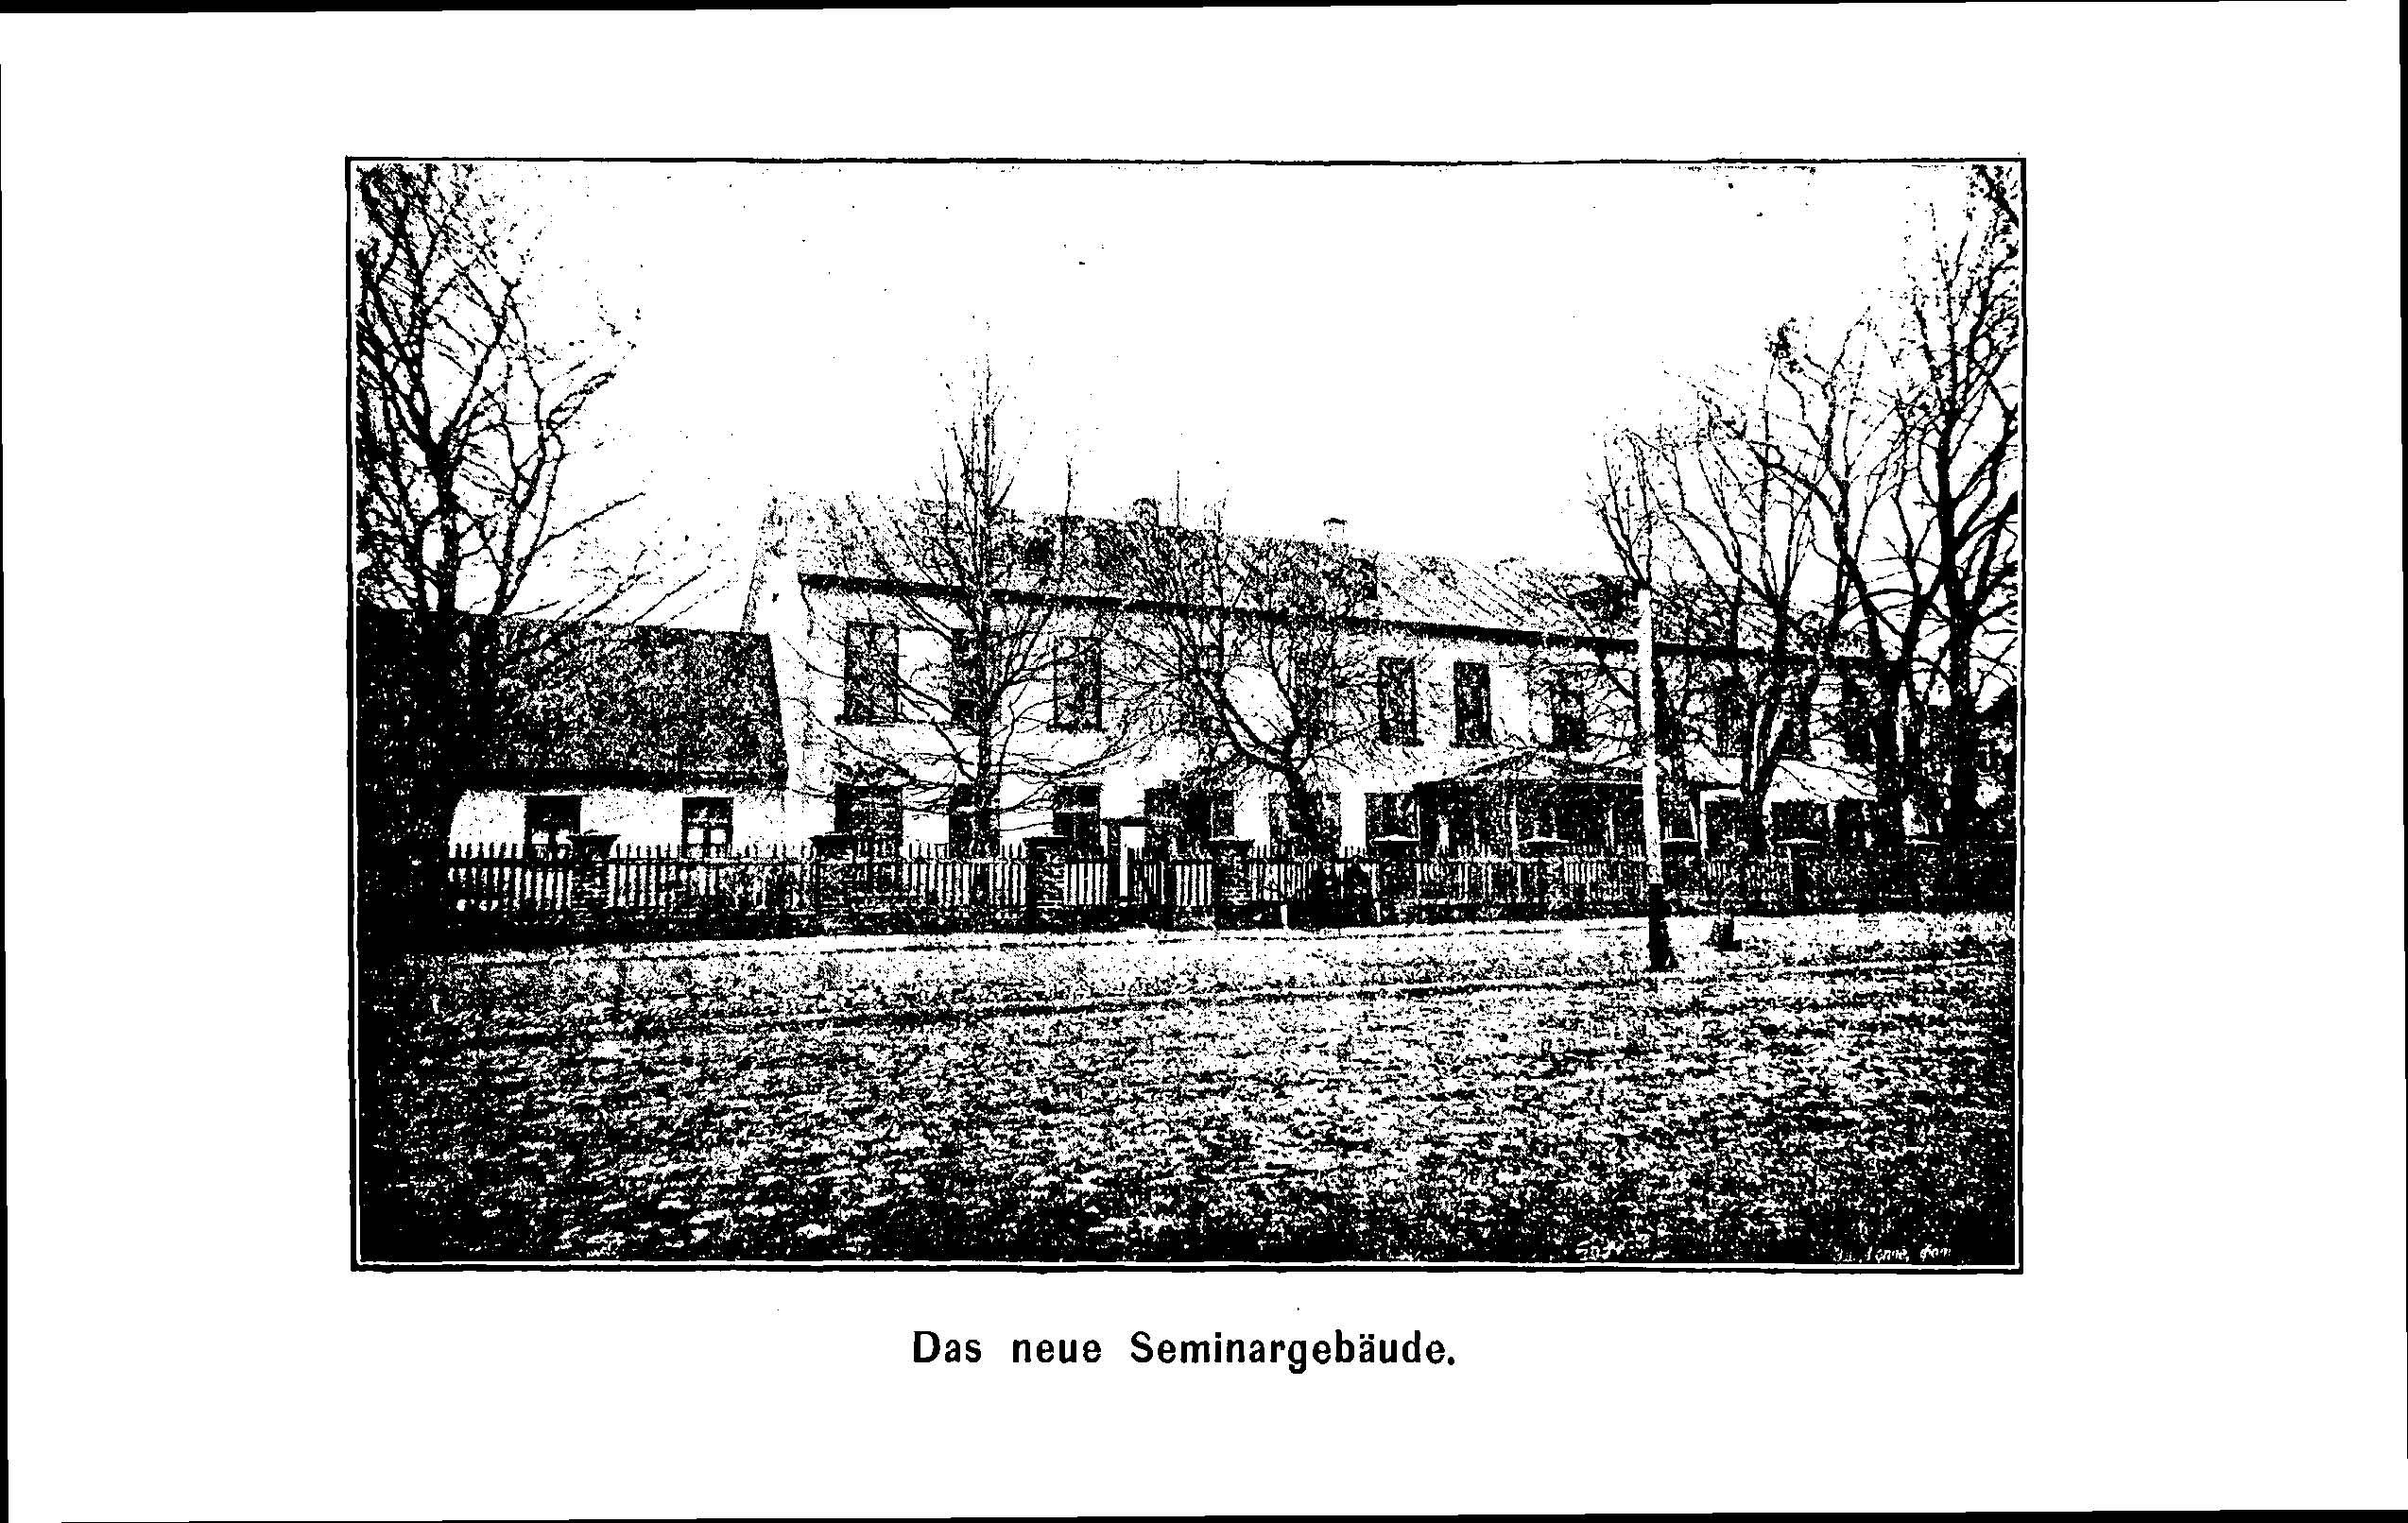 Das Erste Dorpatsche Lehrer-Seminar (1890) | 43. Main body of text